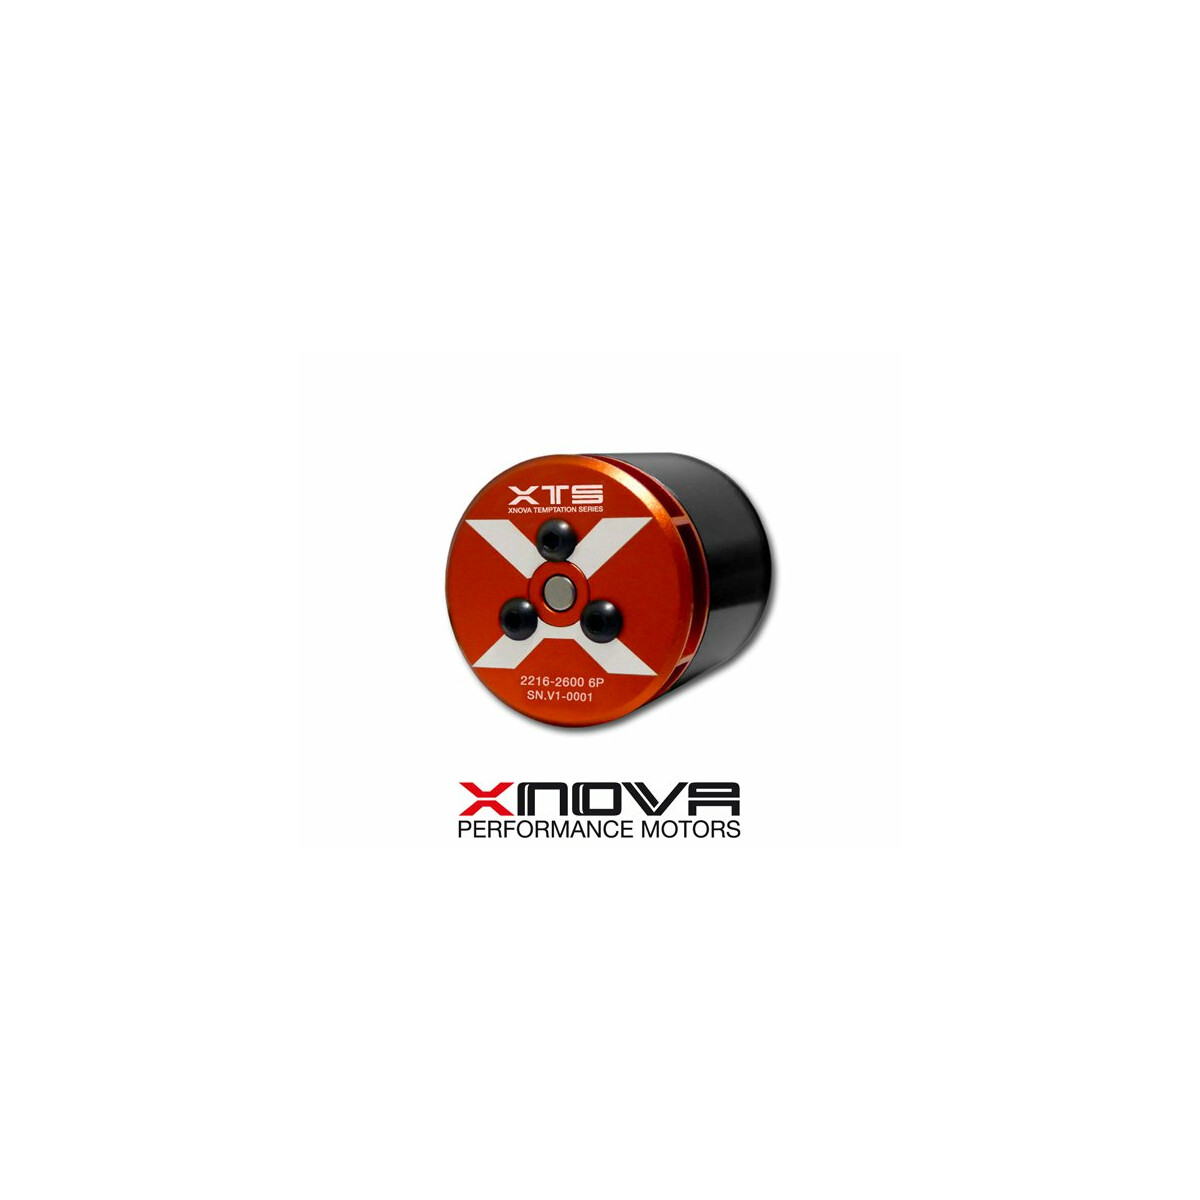 XNOVA XTS 2216-2600 KV 6P